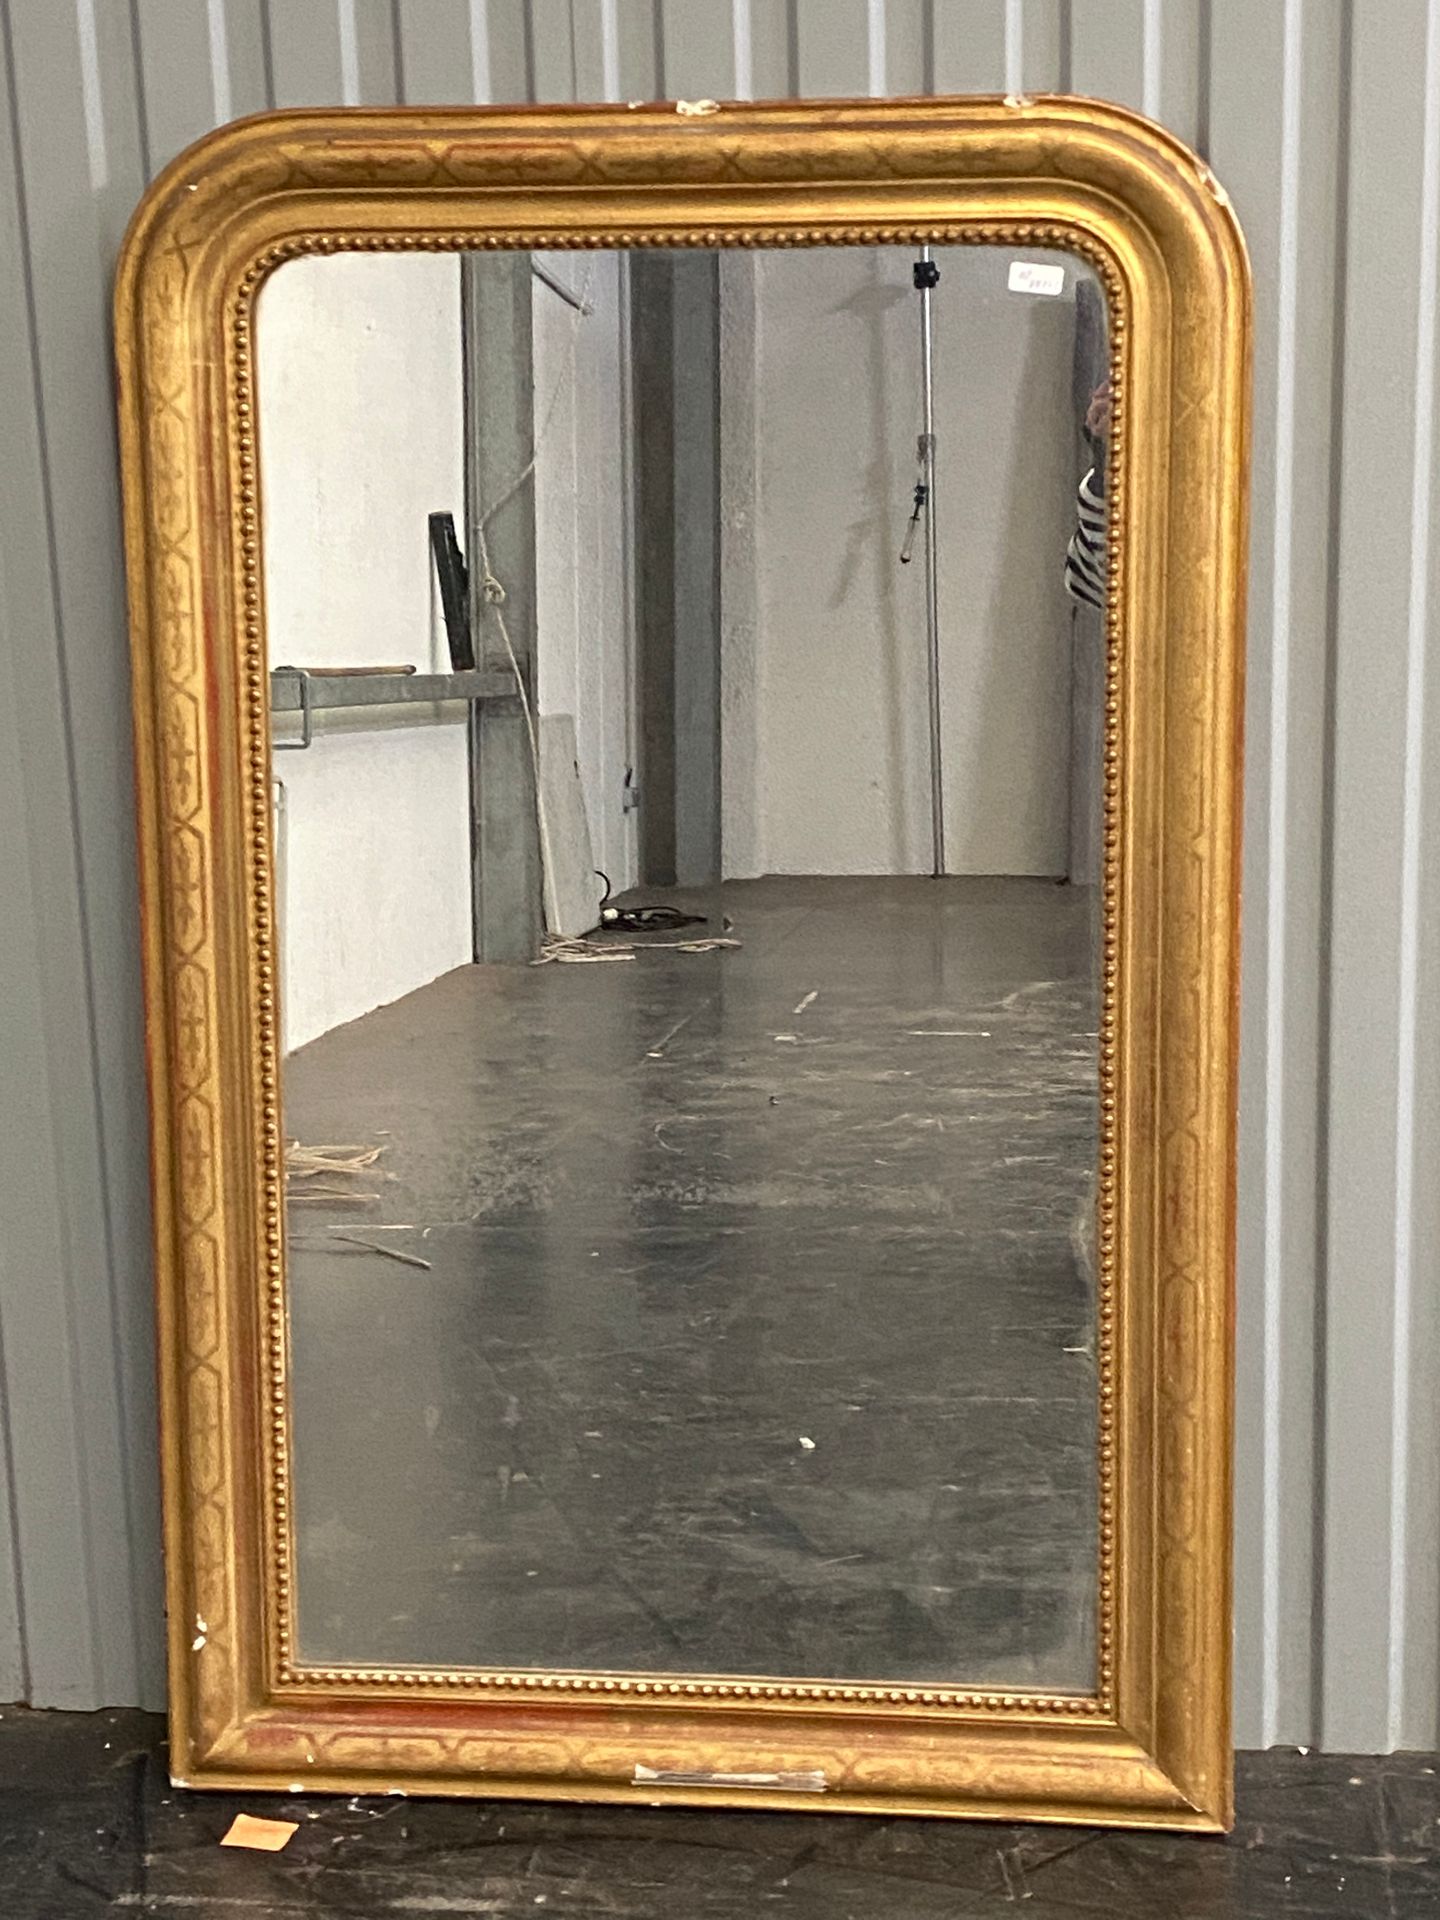 Null Miroir de cheminée à encadrement doré.

Epoque Louis Philippe

134 x 85 cm